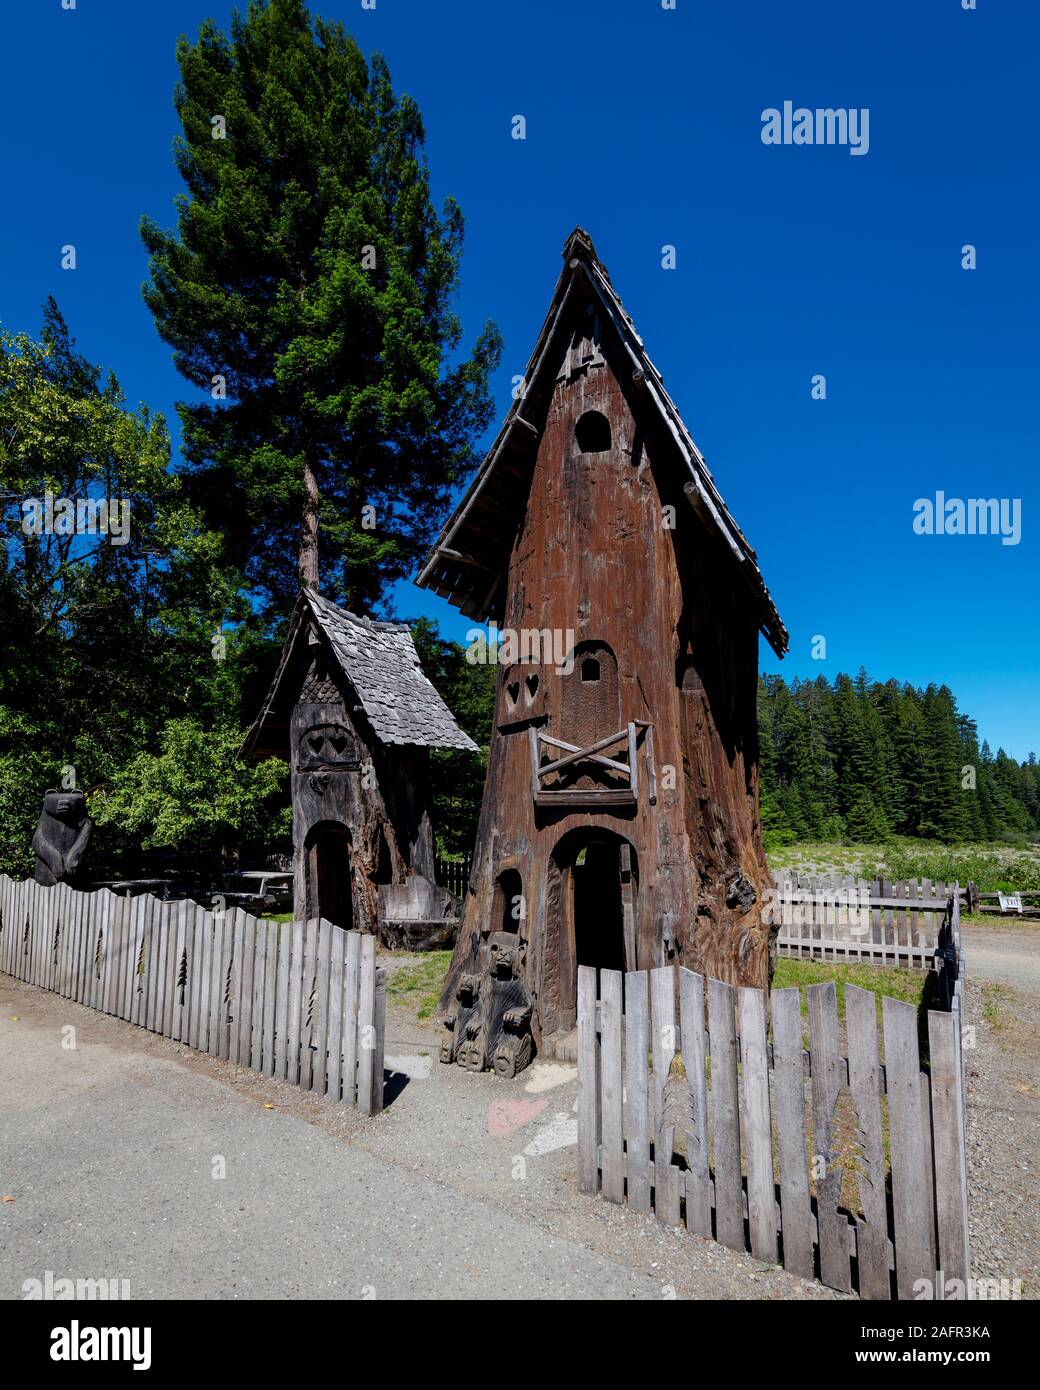 Il 31 maggio 2019, N CALIFORNIA, STATI UNITI D'AMERICA - Treehouse in Viale dei Giganti e sequoia gigante foresta lungo la Route 101 in Foto Stock